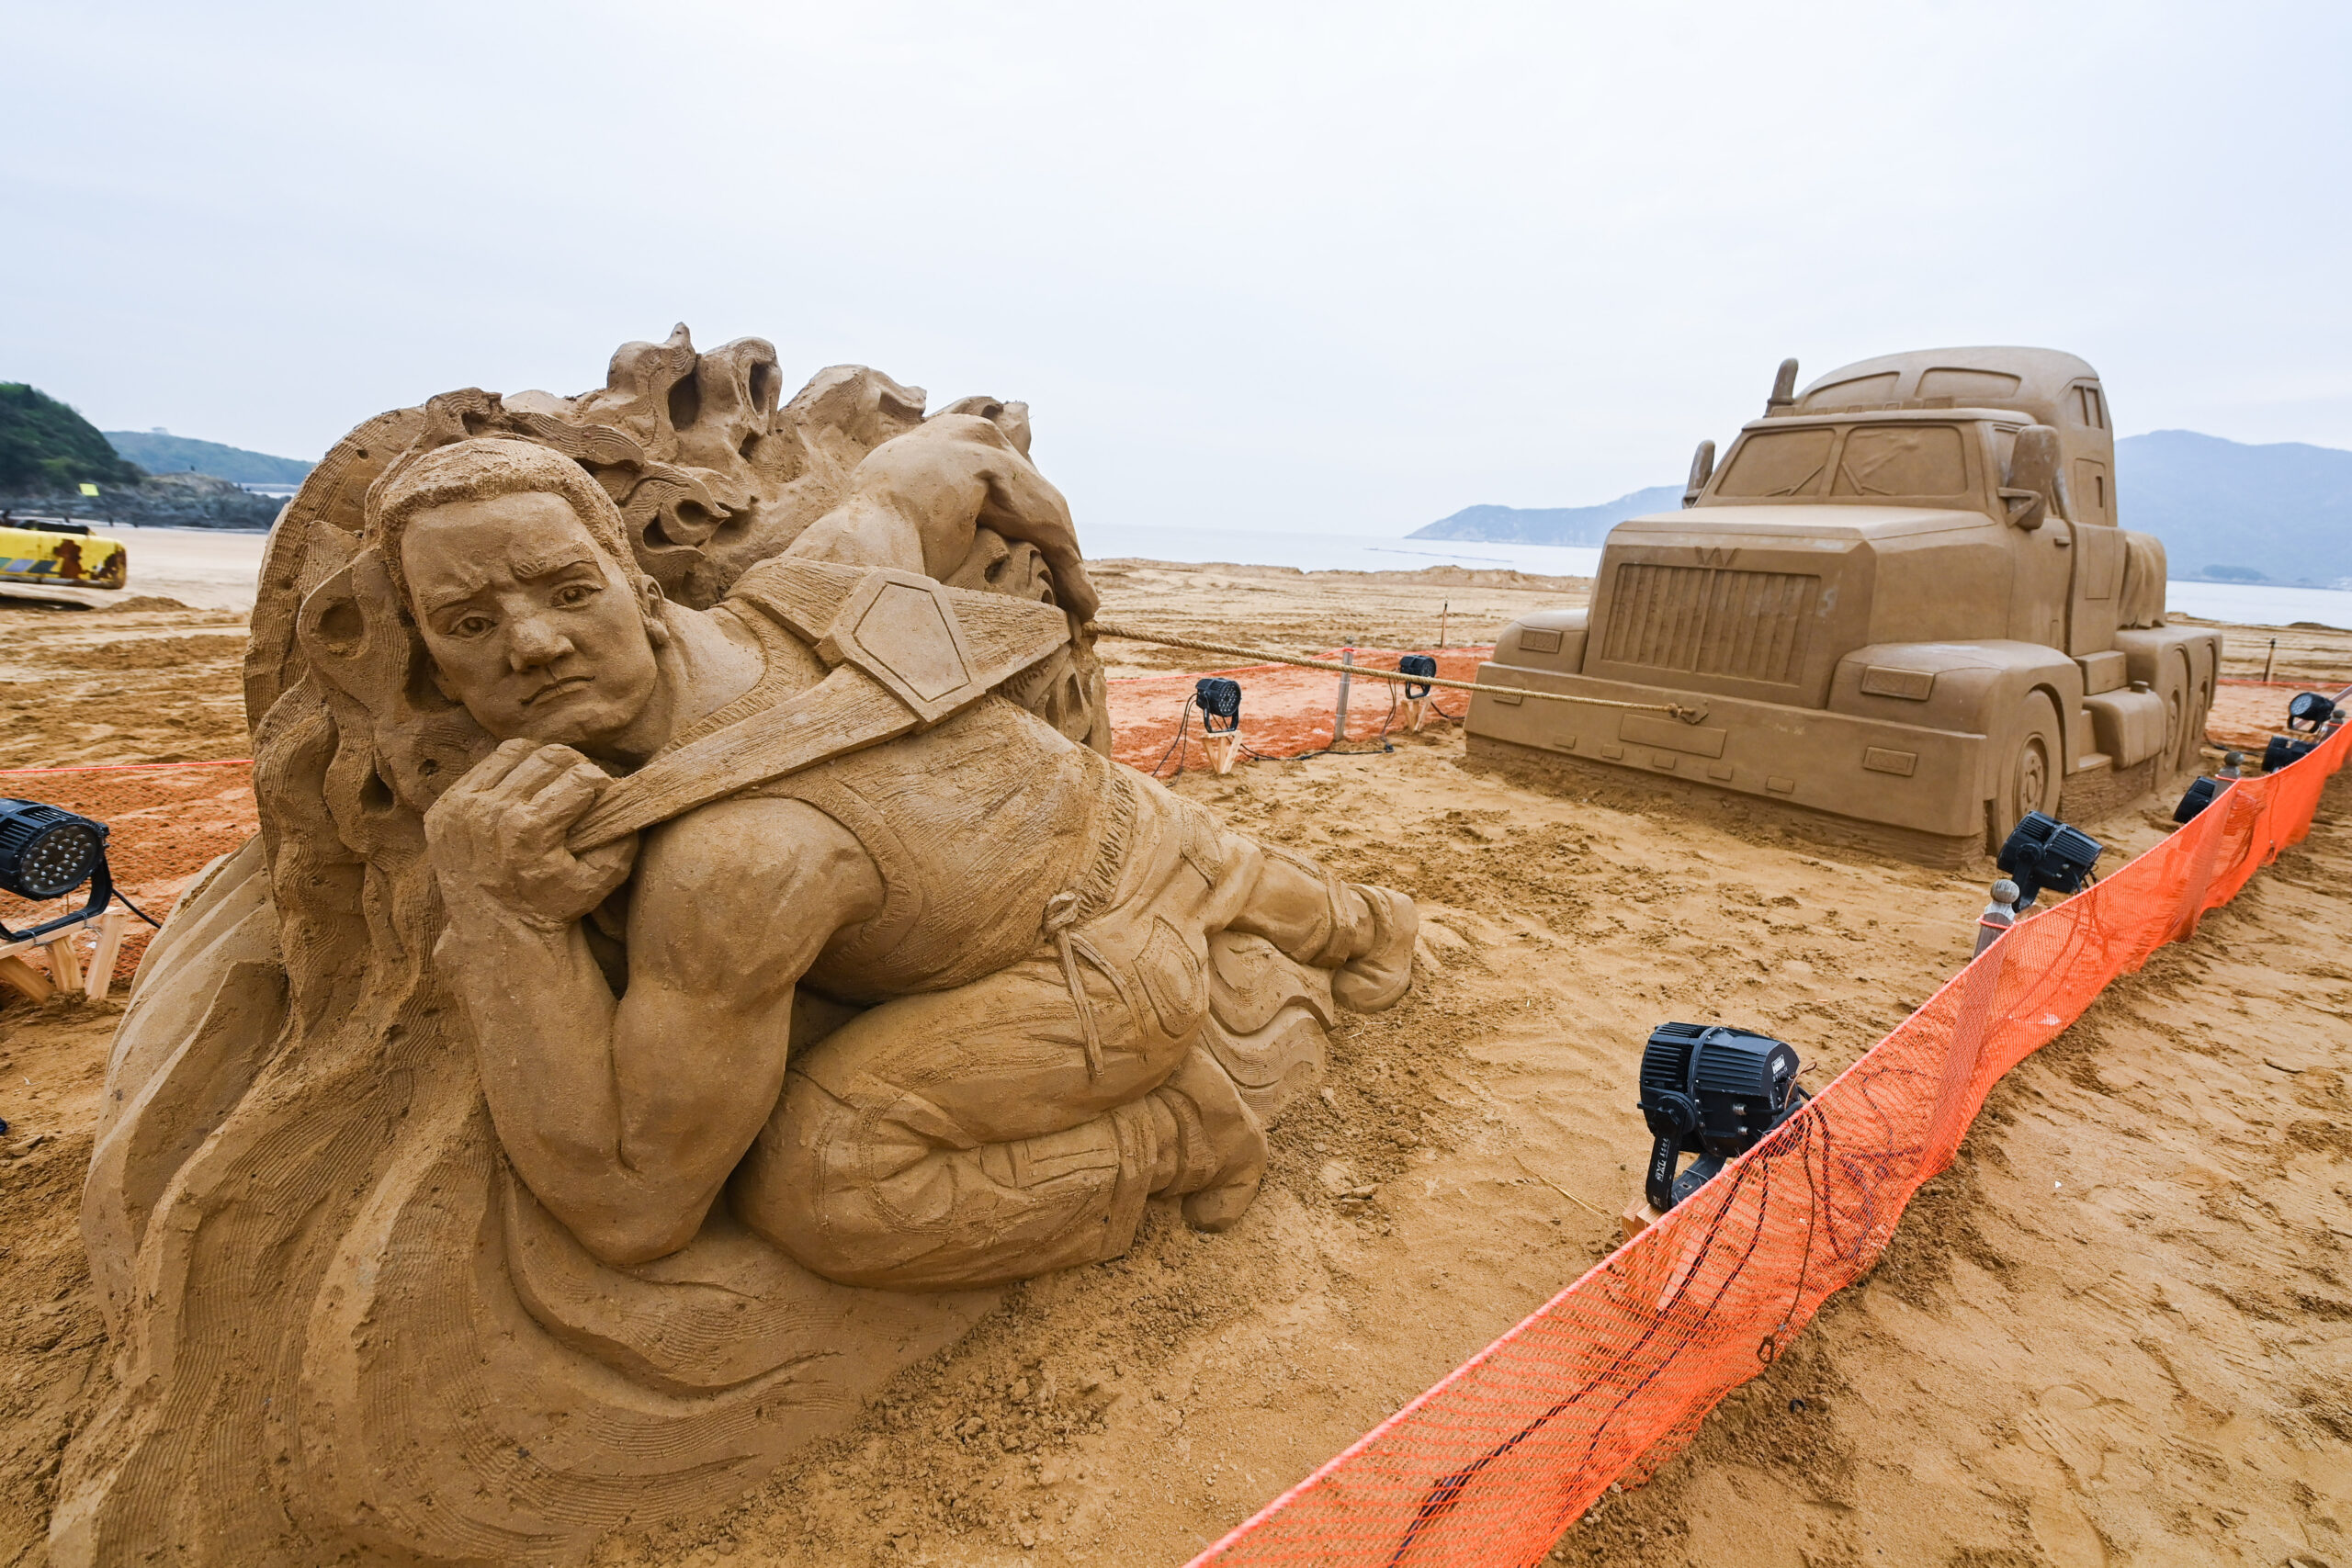 โจวซานเปิดเทศกาล 'ประติมากรรมทราย' นานาชาติ ครั้งที่ 24